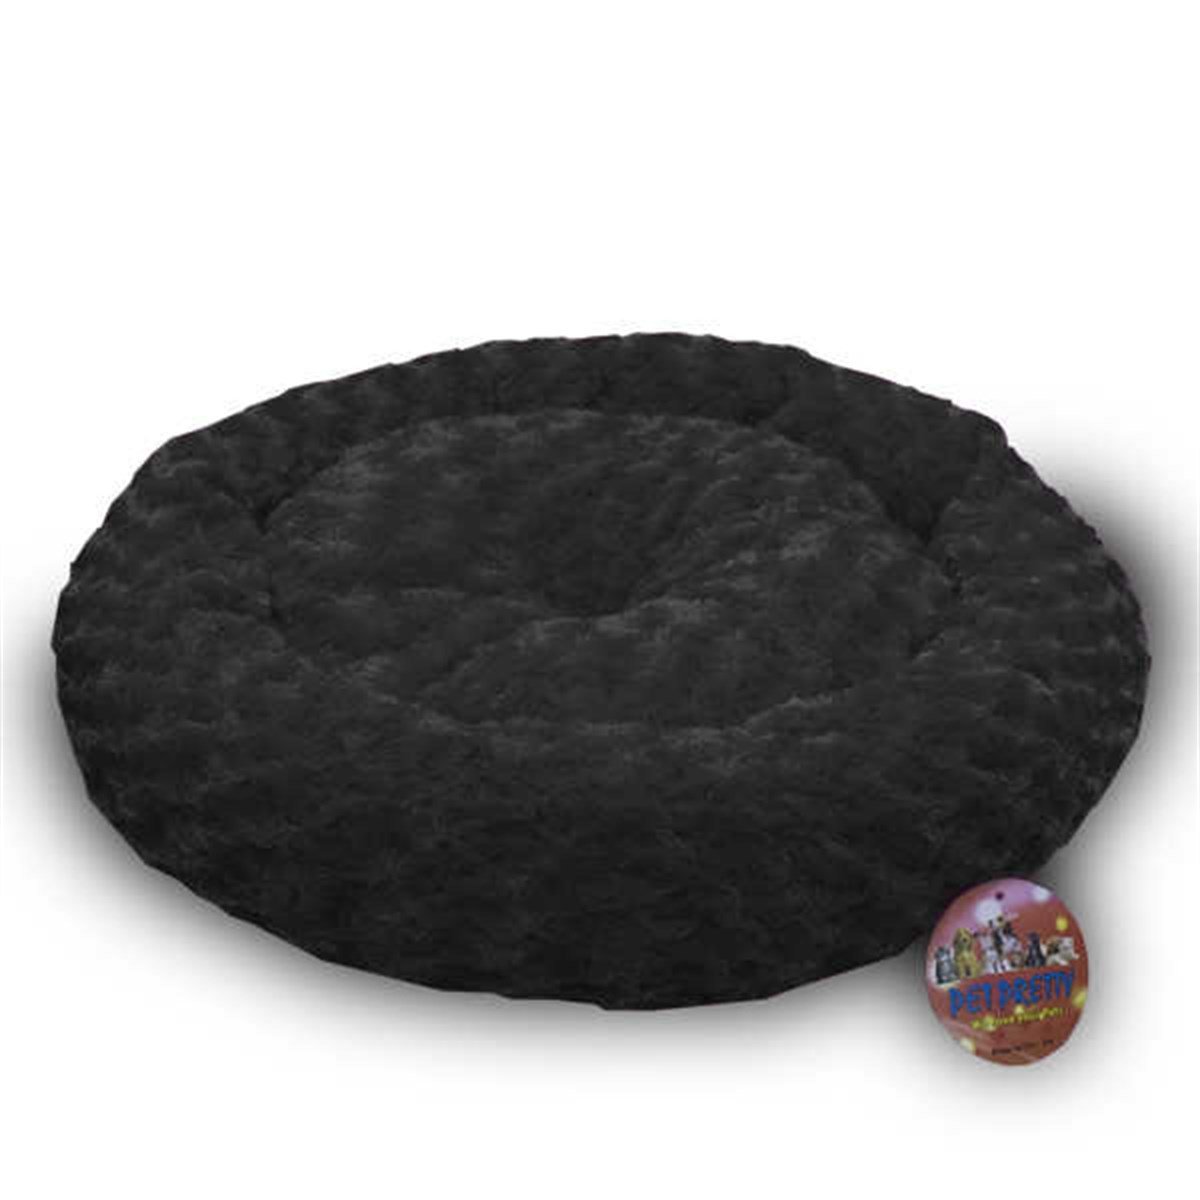 Peluş Yuvarlak Kedi Köpek Yatağı Siyah 50x50